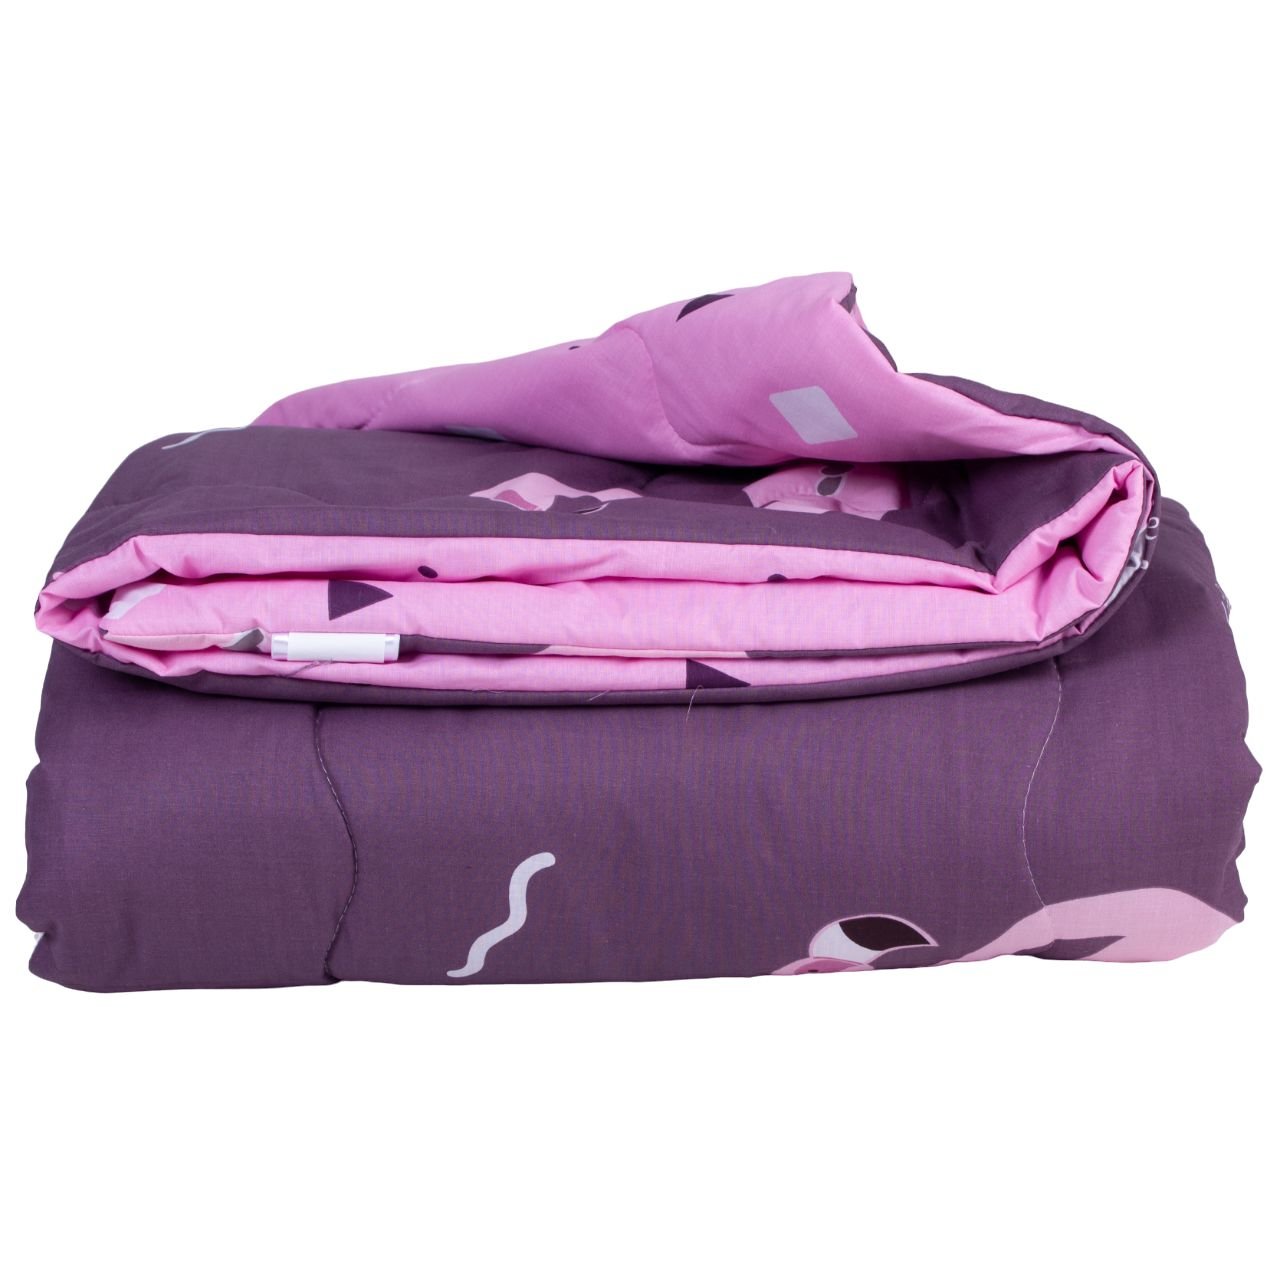 Одеяло хлопковое MirSon Деми №2820 Сolor Fun Line Nice, двуспальное, 205х172 см, фиолетовое (2200006700265) - фото 2